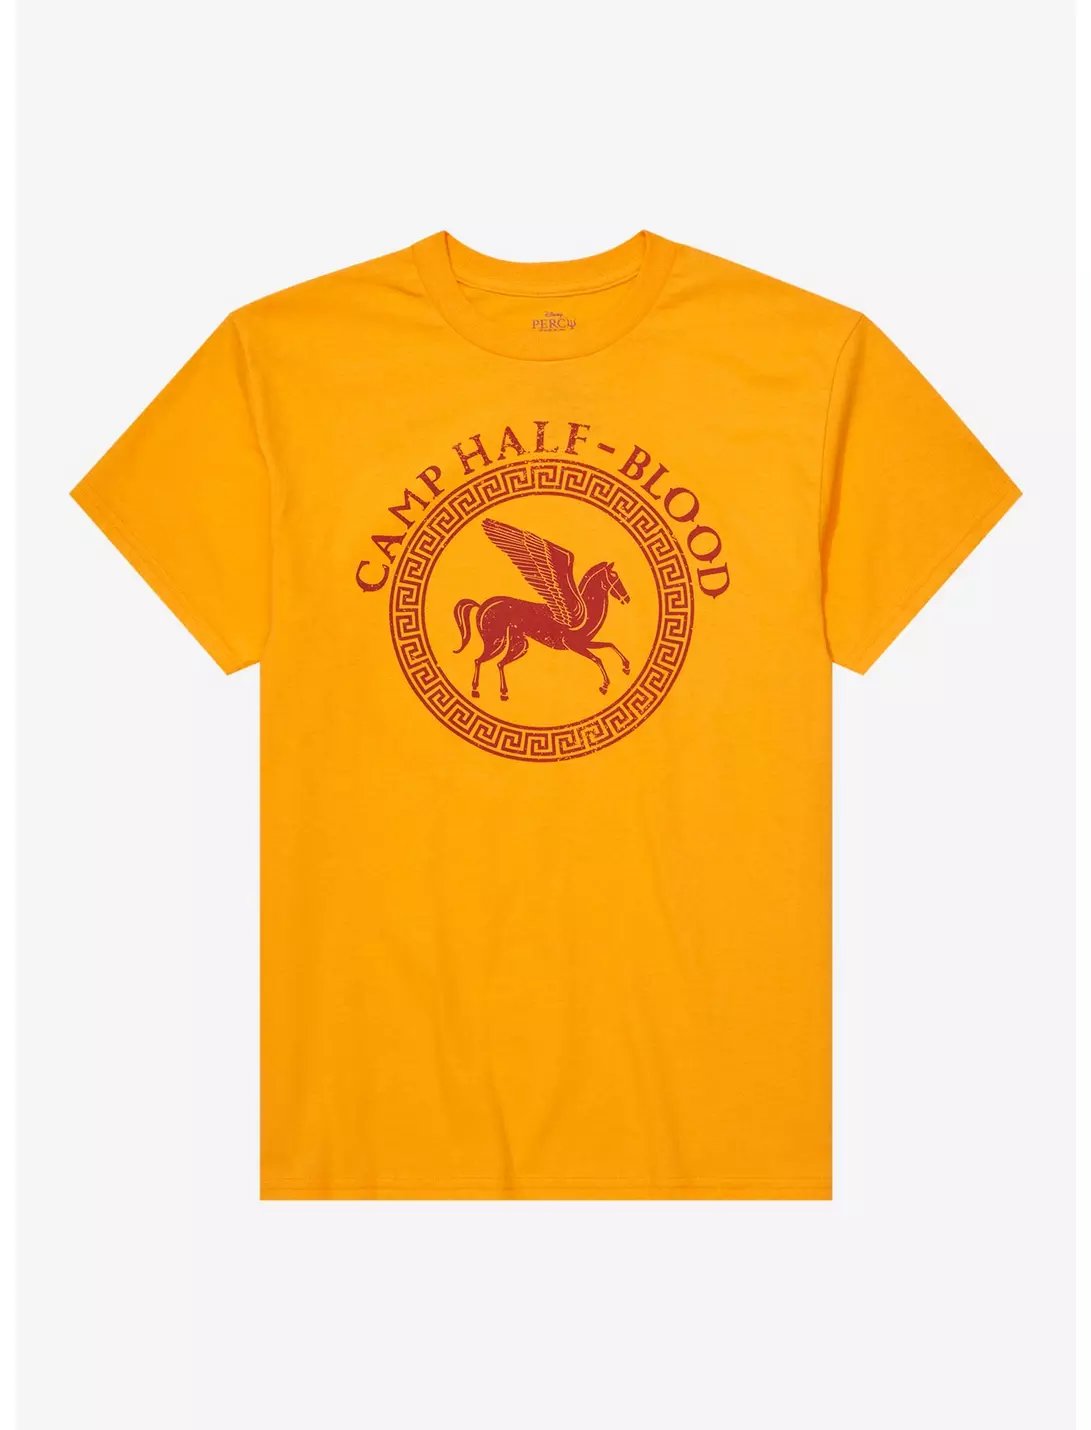 Camiseta Camp Half Blood Acampamento Meio-Sangue Percy Jackson Cor